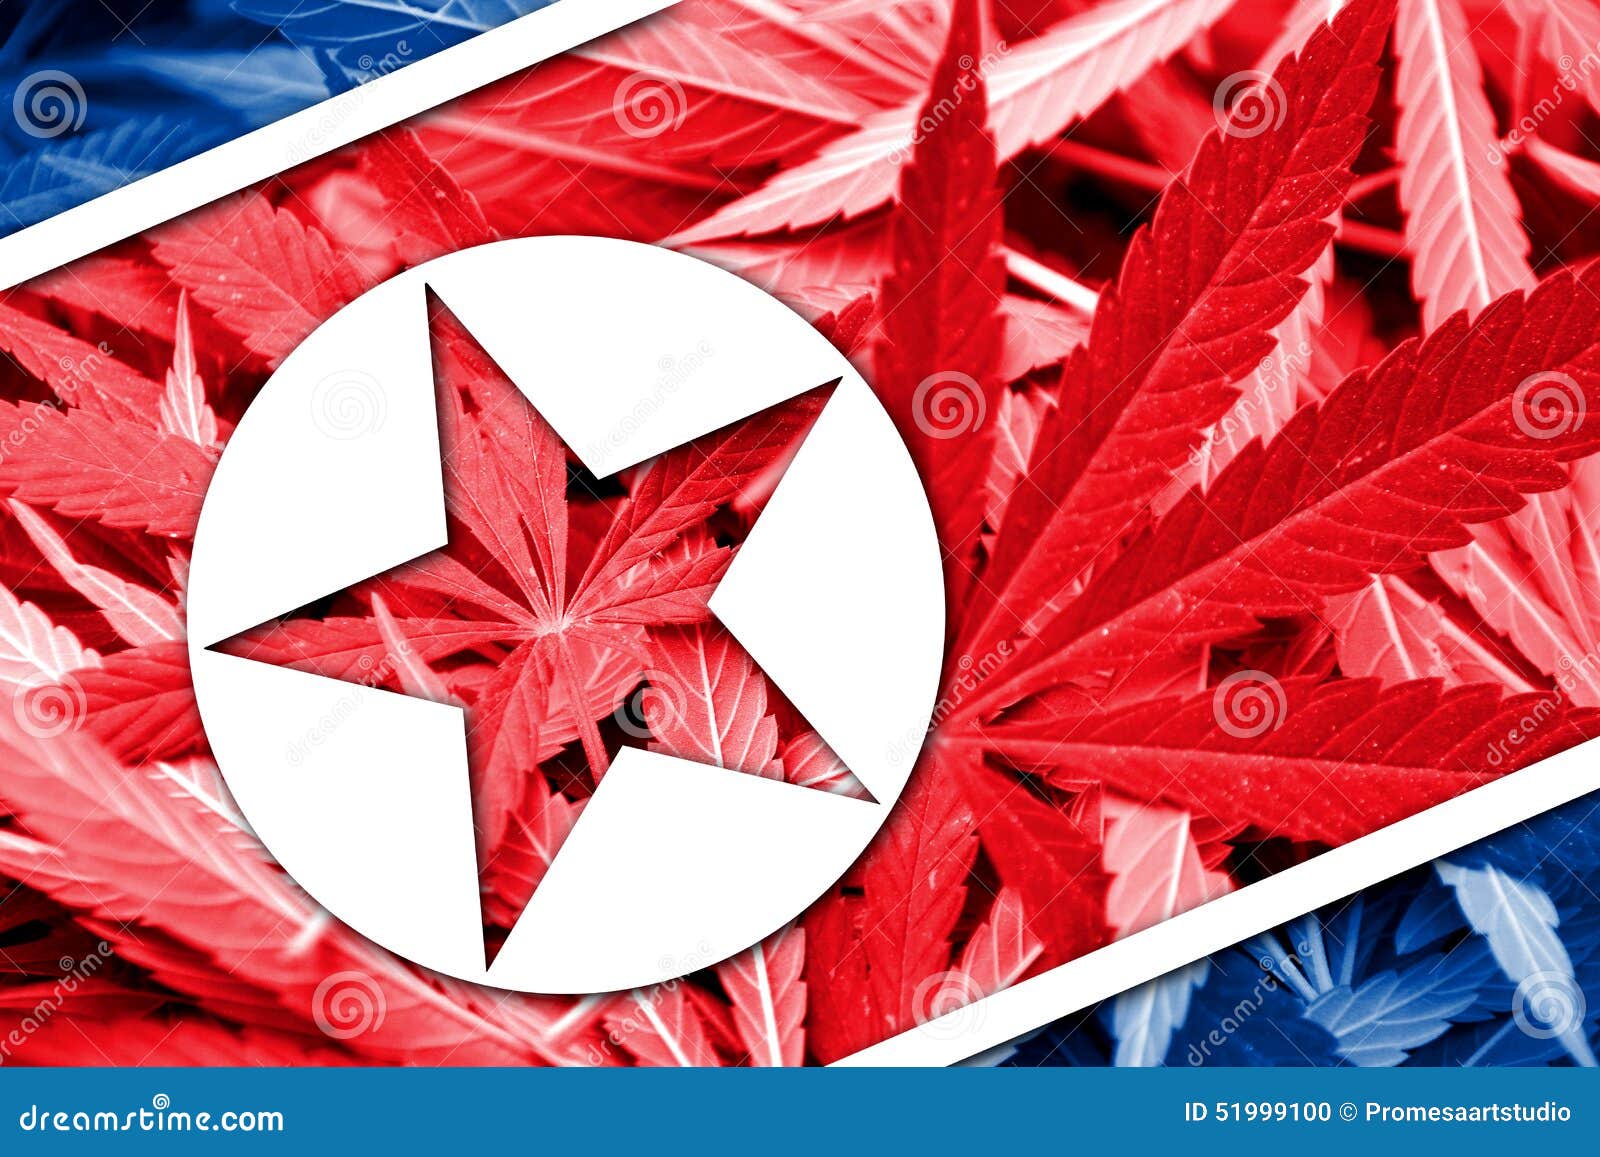 Северная корея легализация марихуаны автоцветущие сорта семян конопли